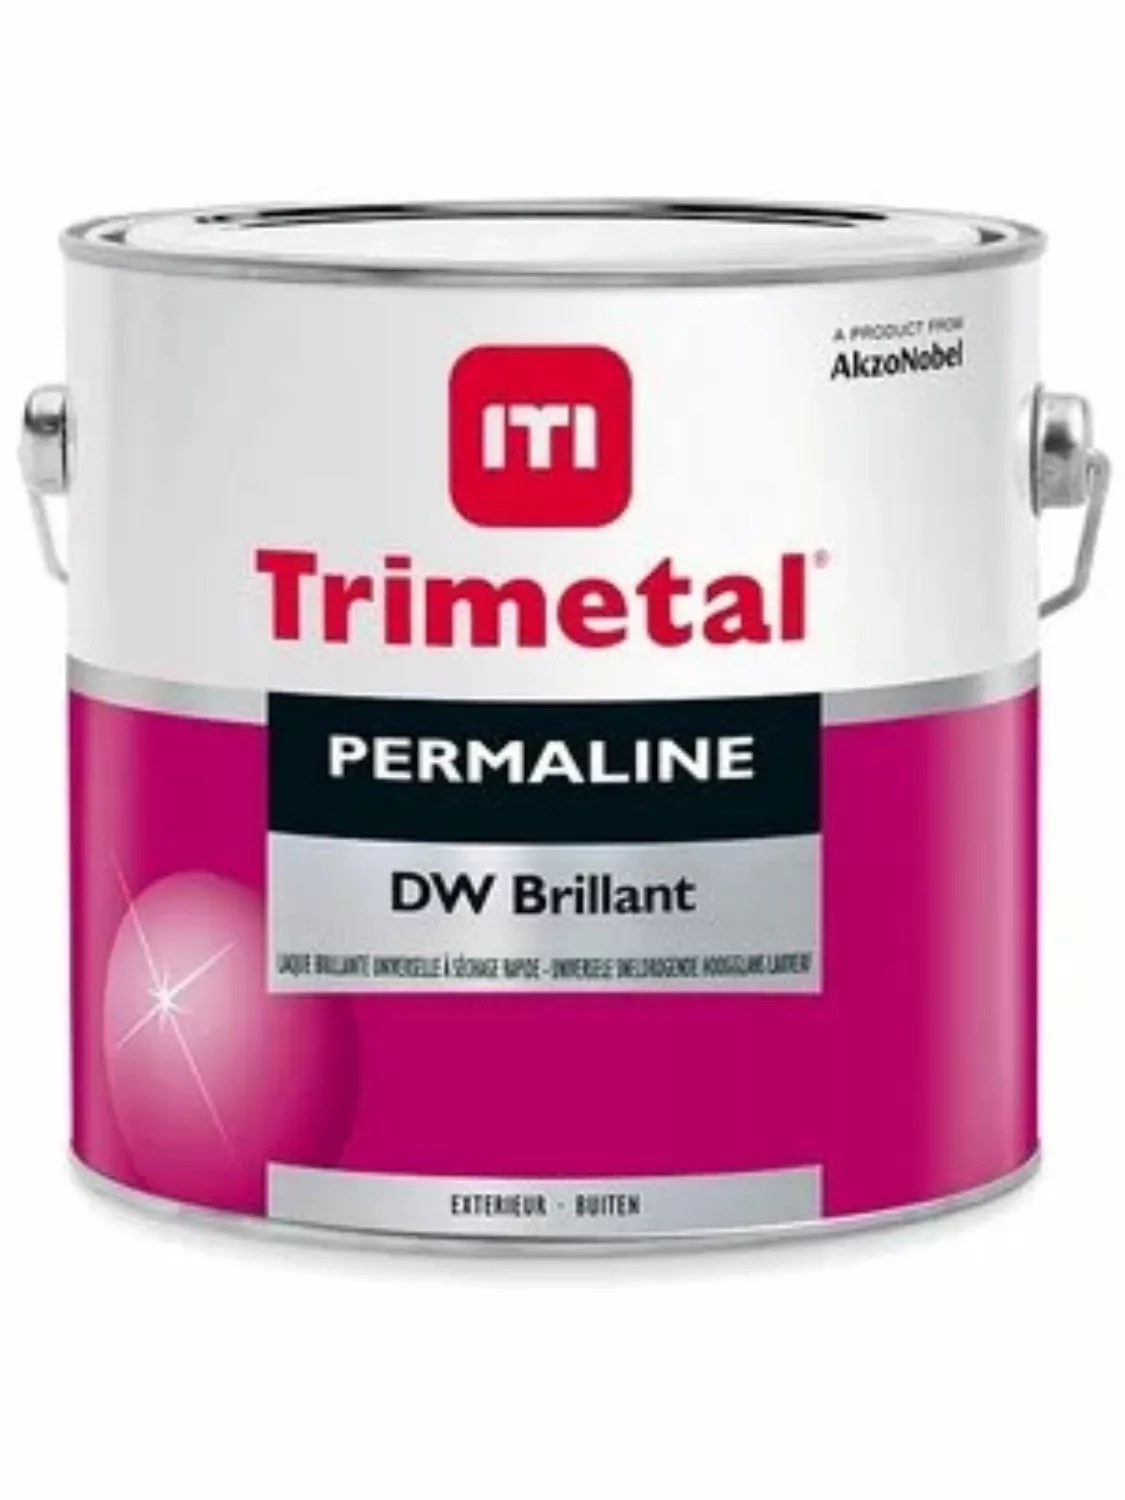 Trimetal Permaline DW Brillant - op kleur gemengd - 1L-image